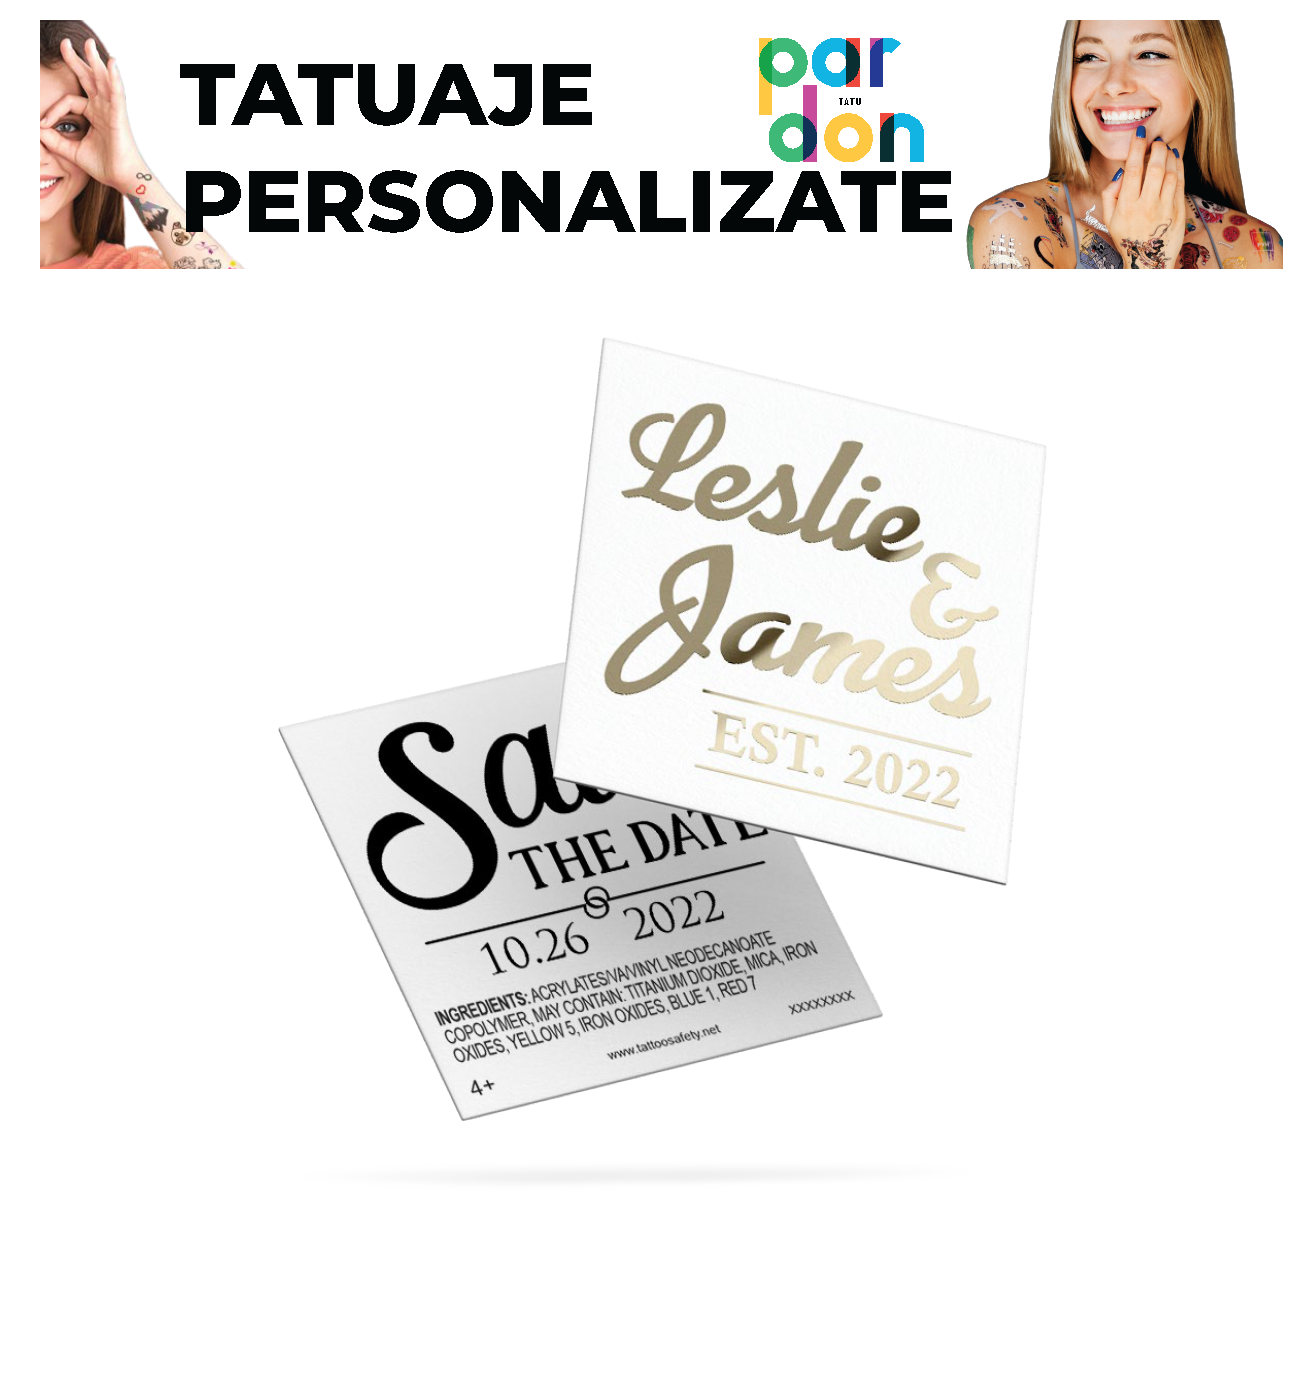 Productie Tatuaje Personalizate - Pardon Tatu - Gold - 280 x 190 MM - 1000